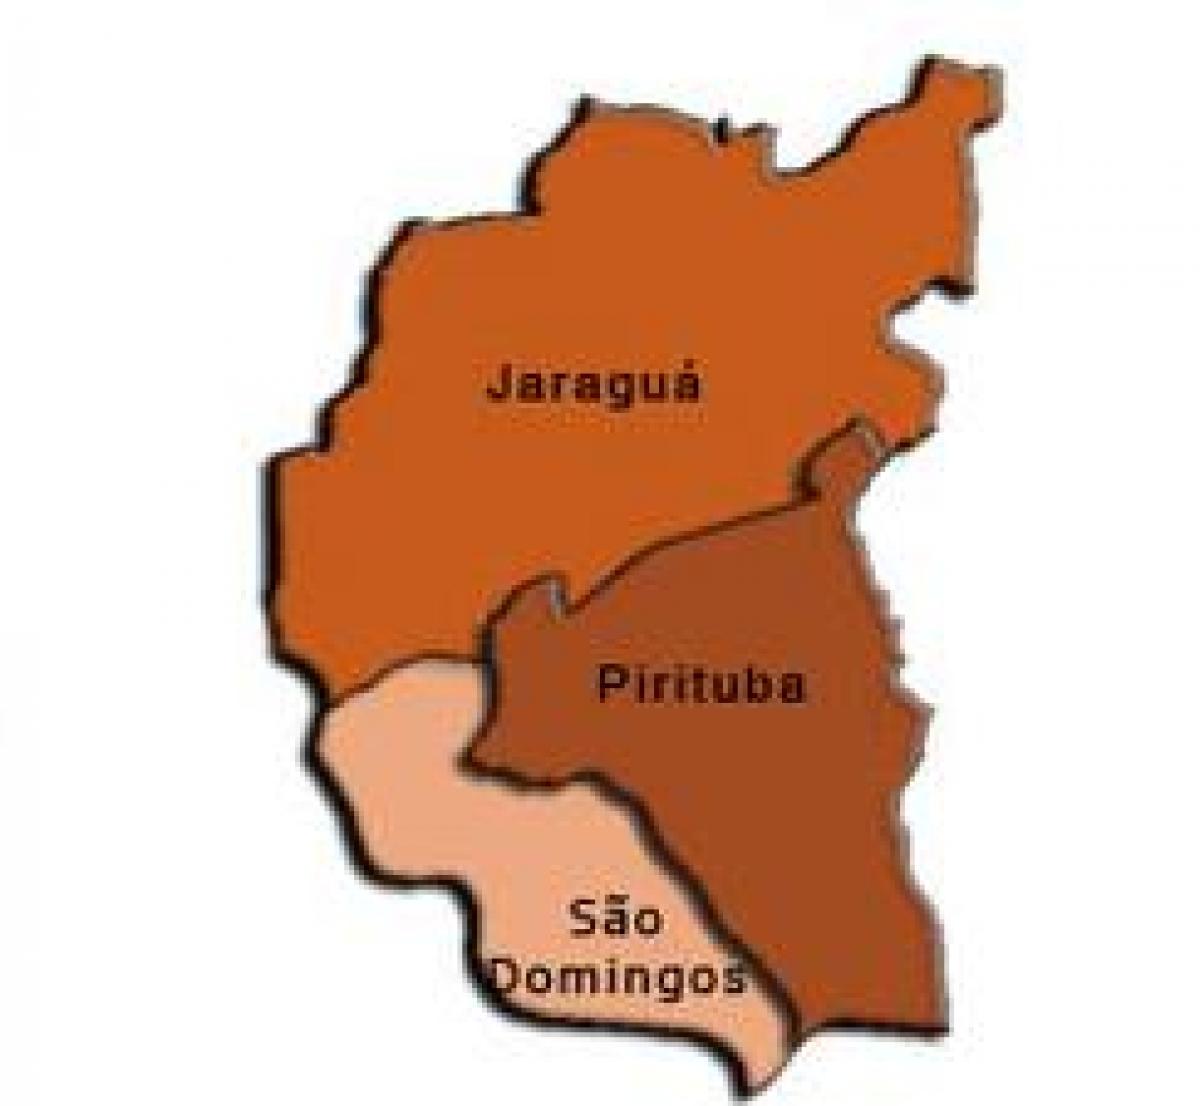 नक्शे के पिरिटुबा-जरगुआ में उप-प्रान्त